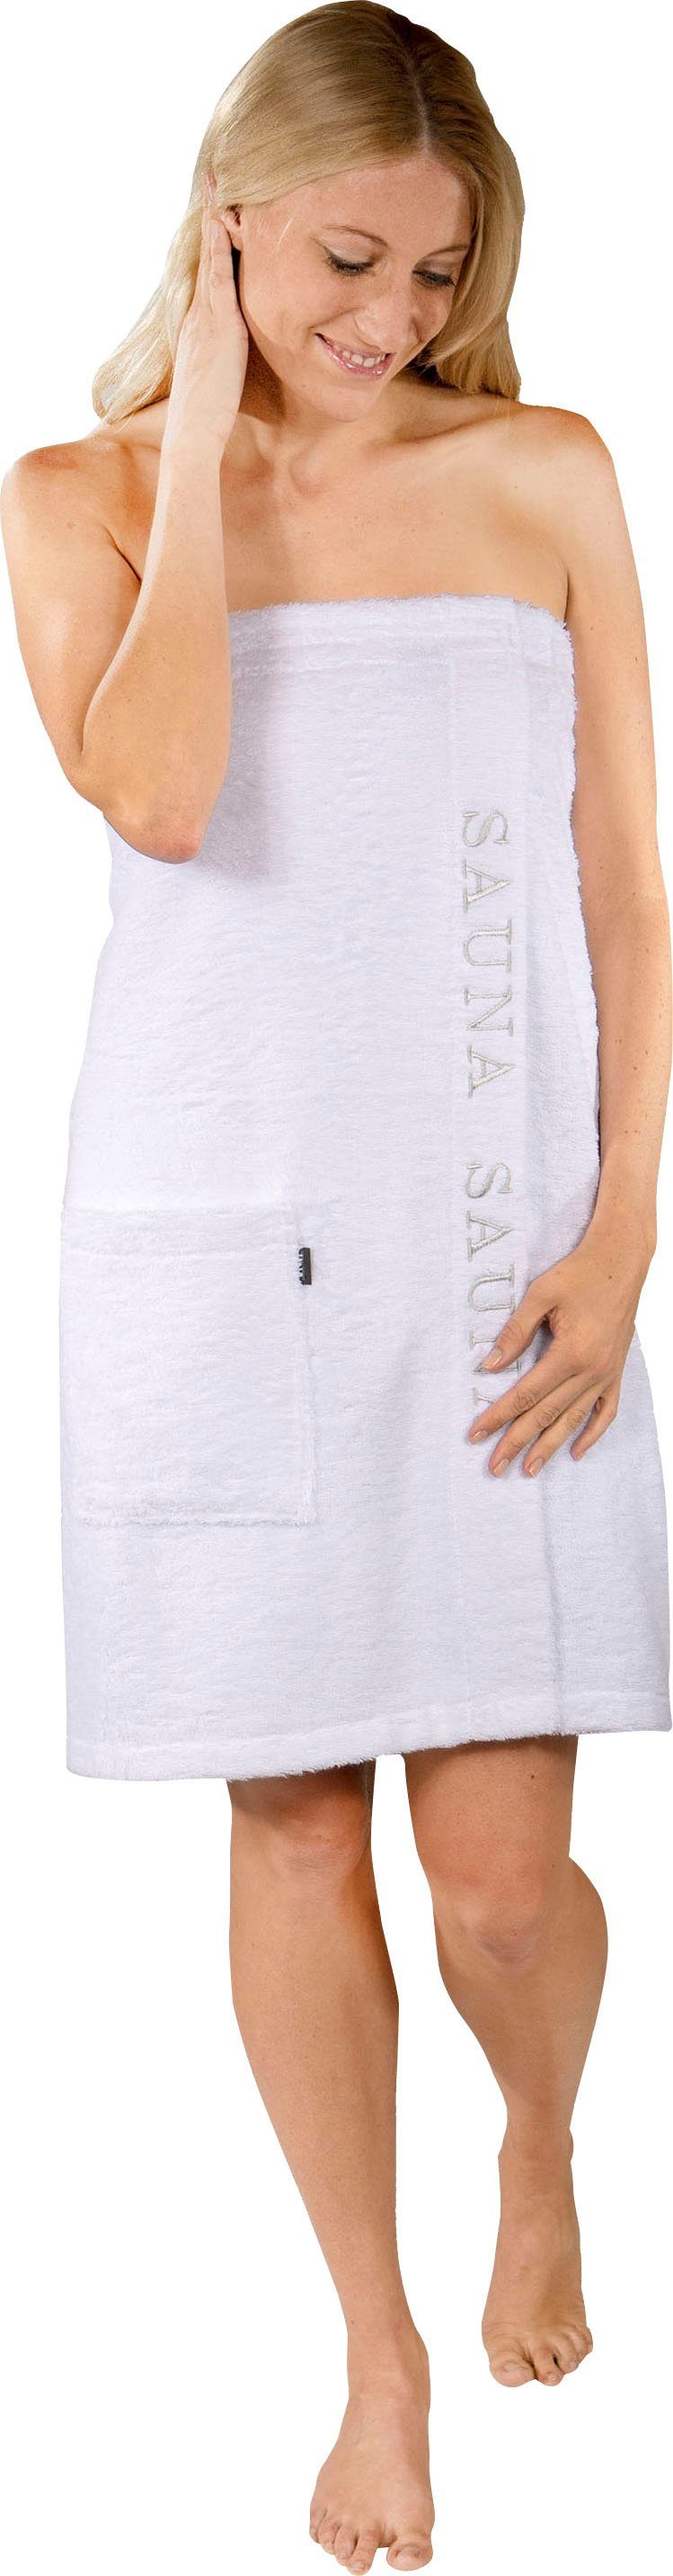 Wewo fashion Baumwolle, Klettverschluss Sauna Saunakilt weiß Klettverschluss, für Damen, Kilt Langform, & mit 9534, Stickerei